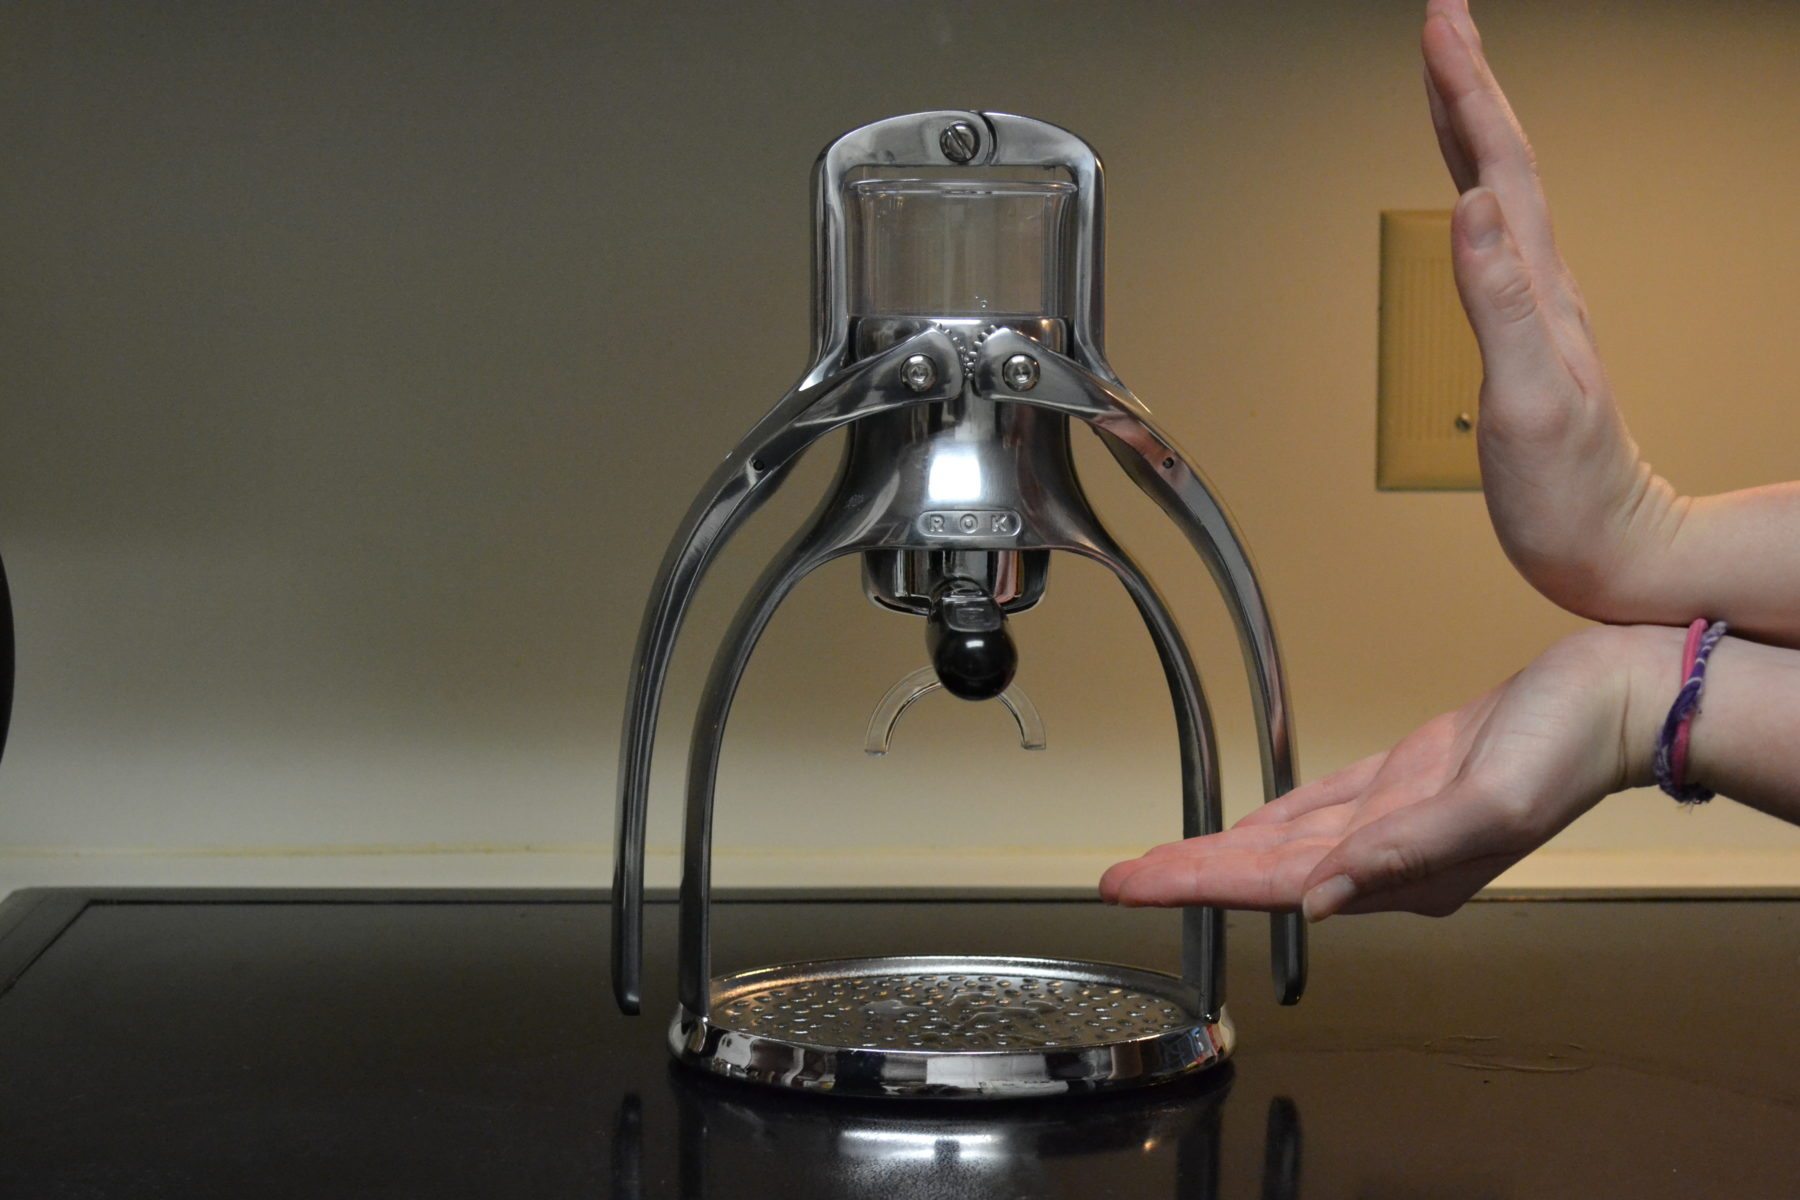 ROK Espresso Maker Review 2022 - Coffee Brew Guides